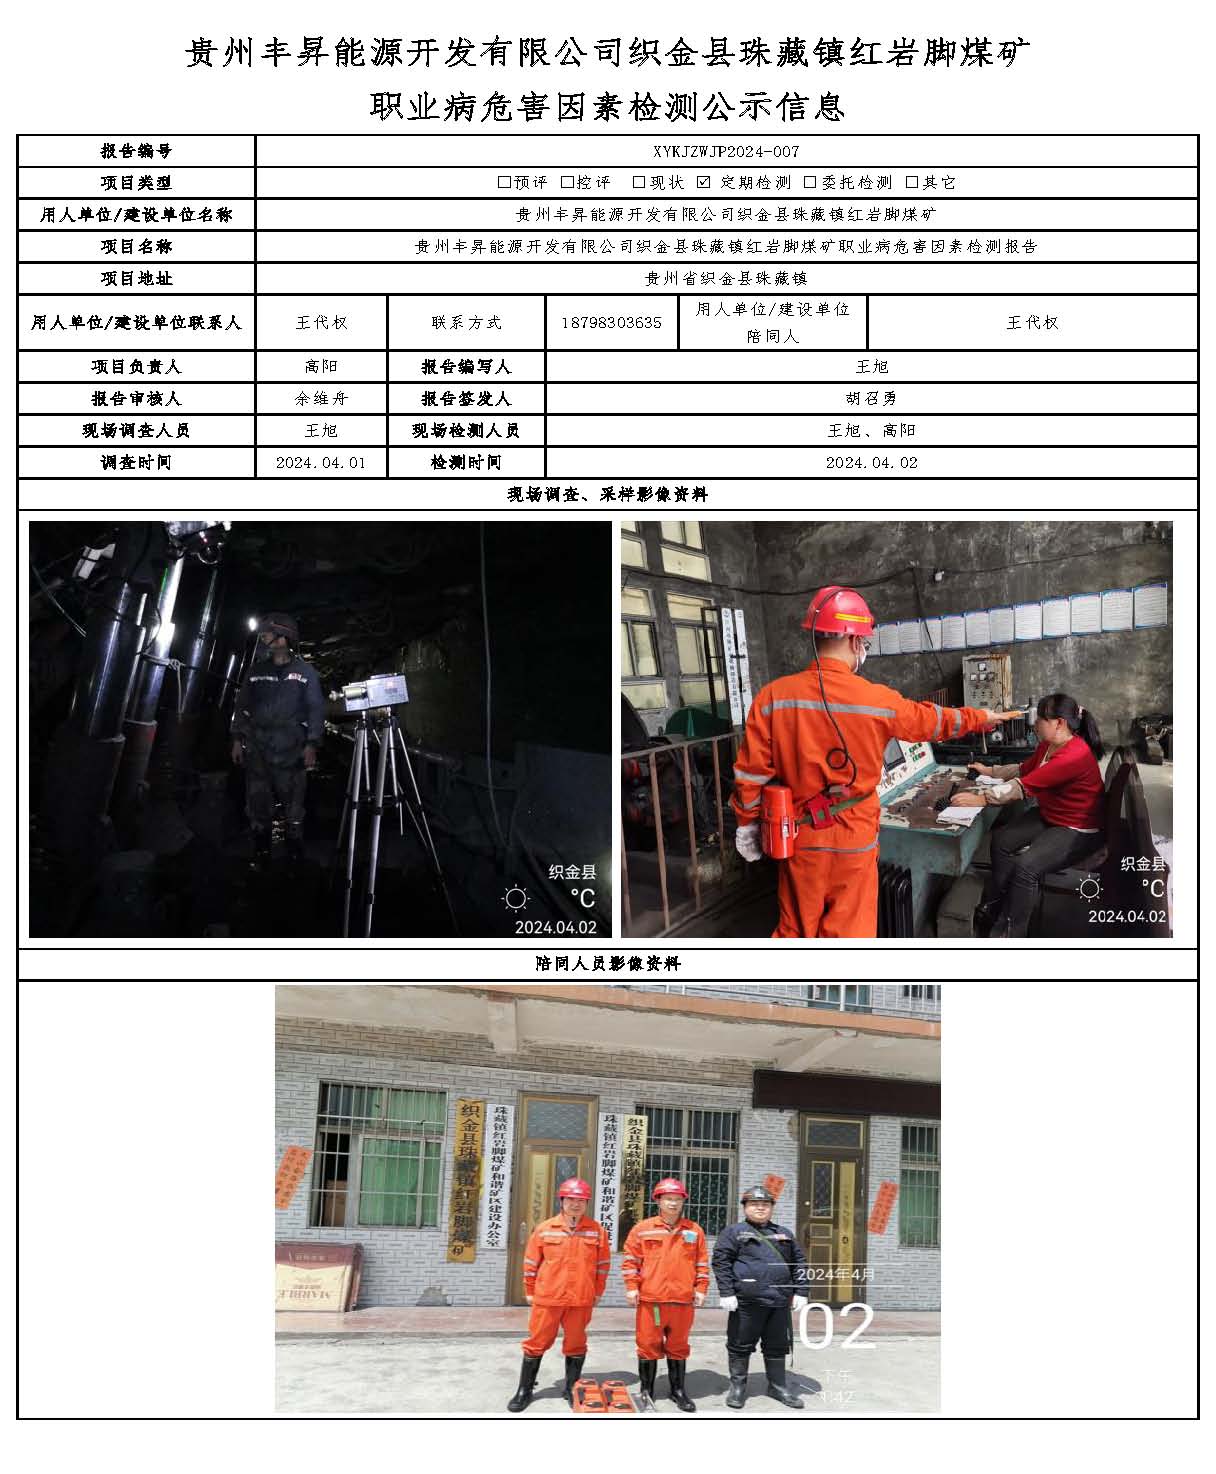 贵州丰昇能源开发有限公司织金县珠藏镇红岩脚煤矿 职业病危害因素检测公示信息